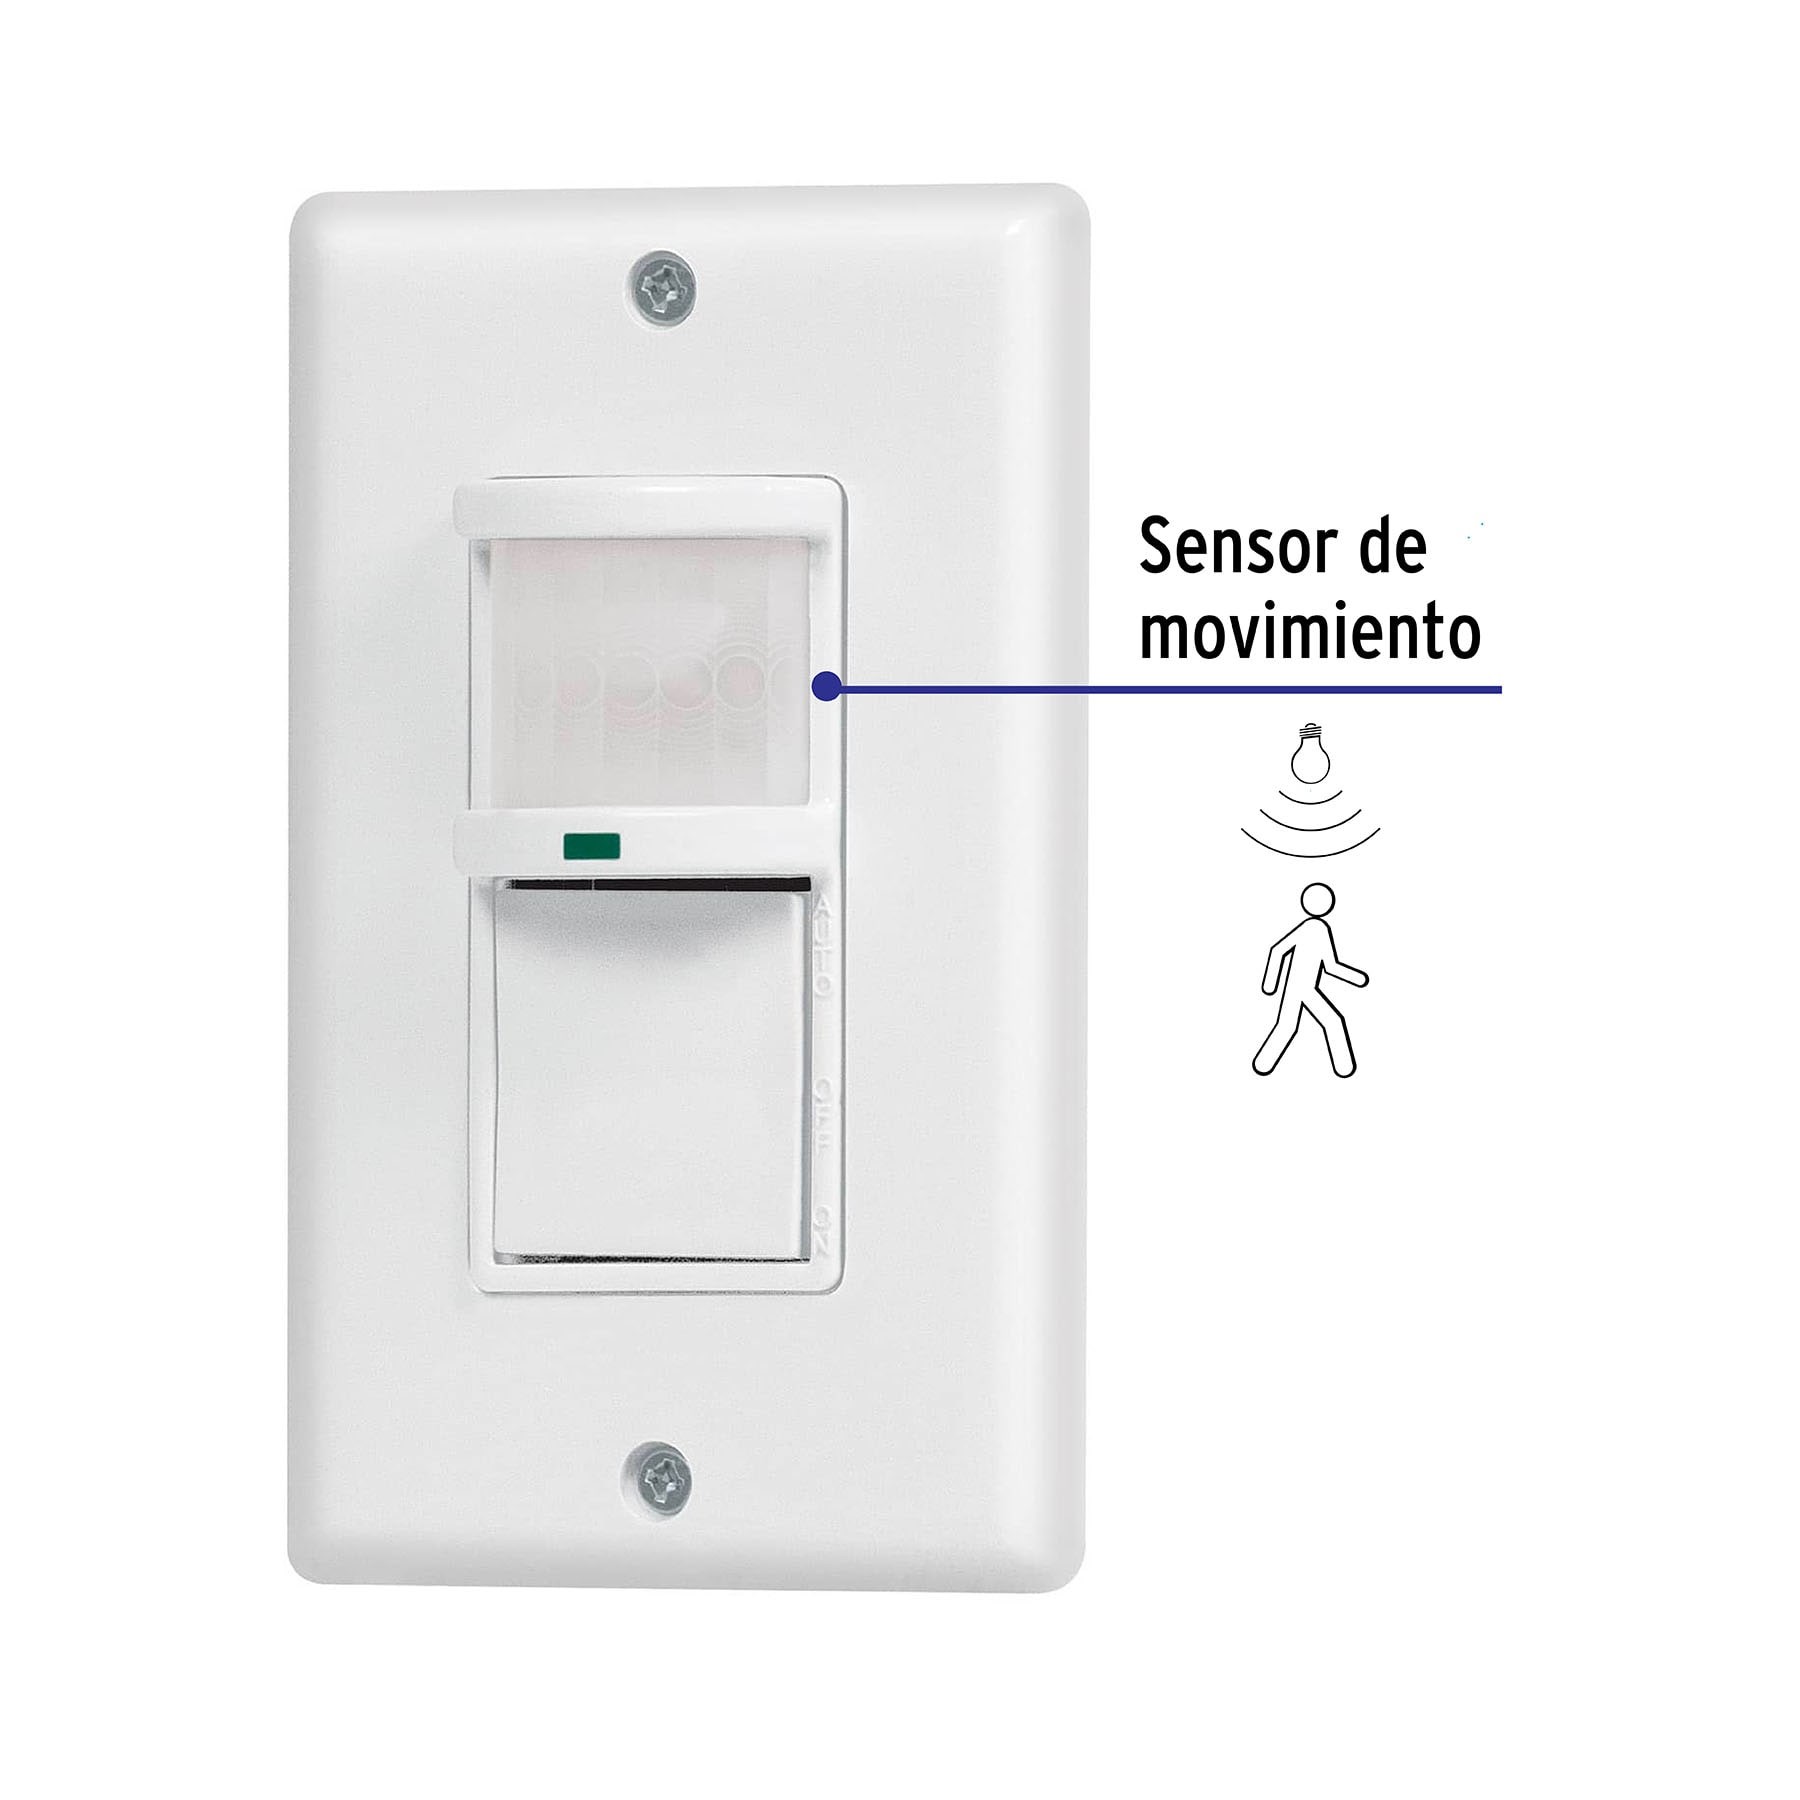 Sensor de movimiento con interruptor de pared, Volteck, Sensores